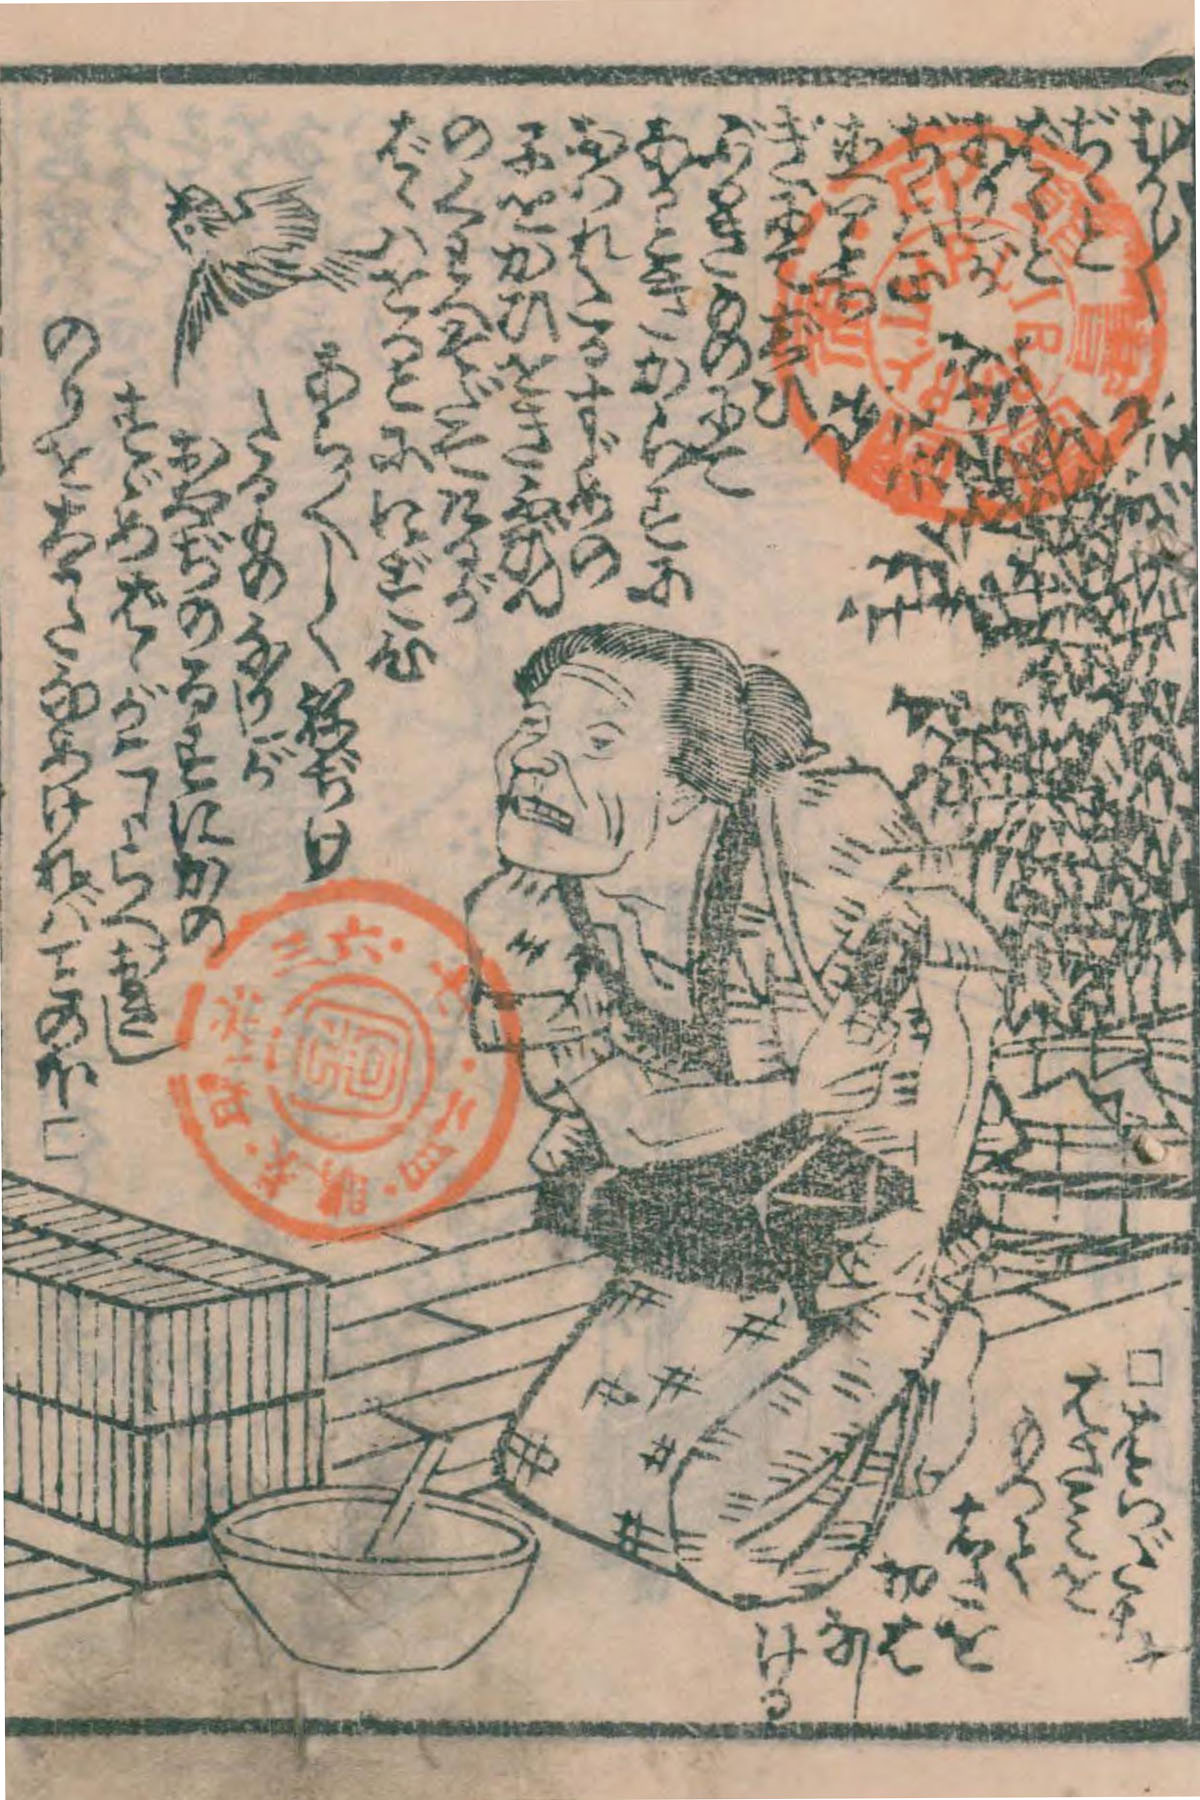 花咲か爺さんは外国人 桃太郎はニート 日本昔話の語られざる姿をのぞいてみた 和樂web 日本文化の入り口マガジン